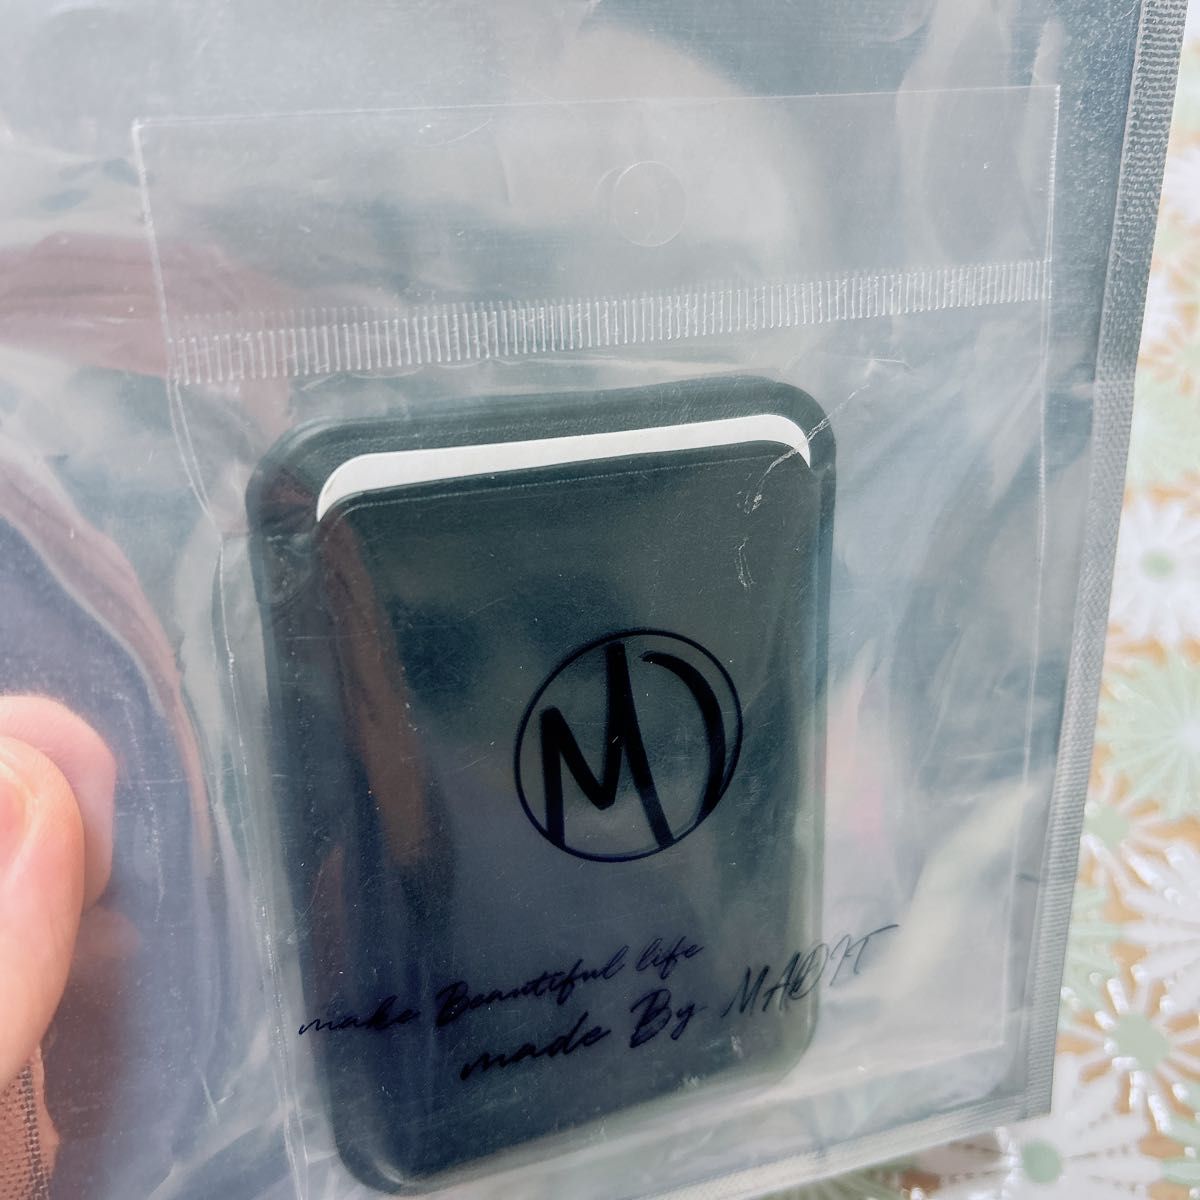 カードケース マグネット内蔵 iPhone用 強力磁力 マグセーフ カード収納 iPhone